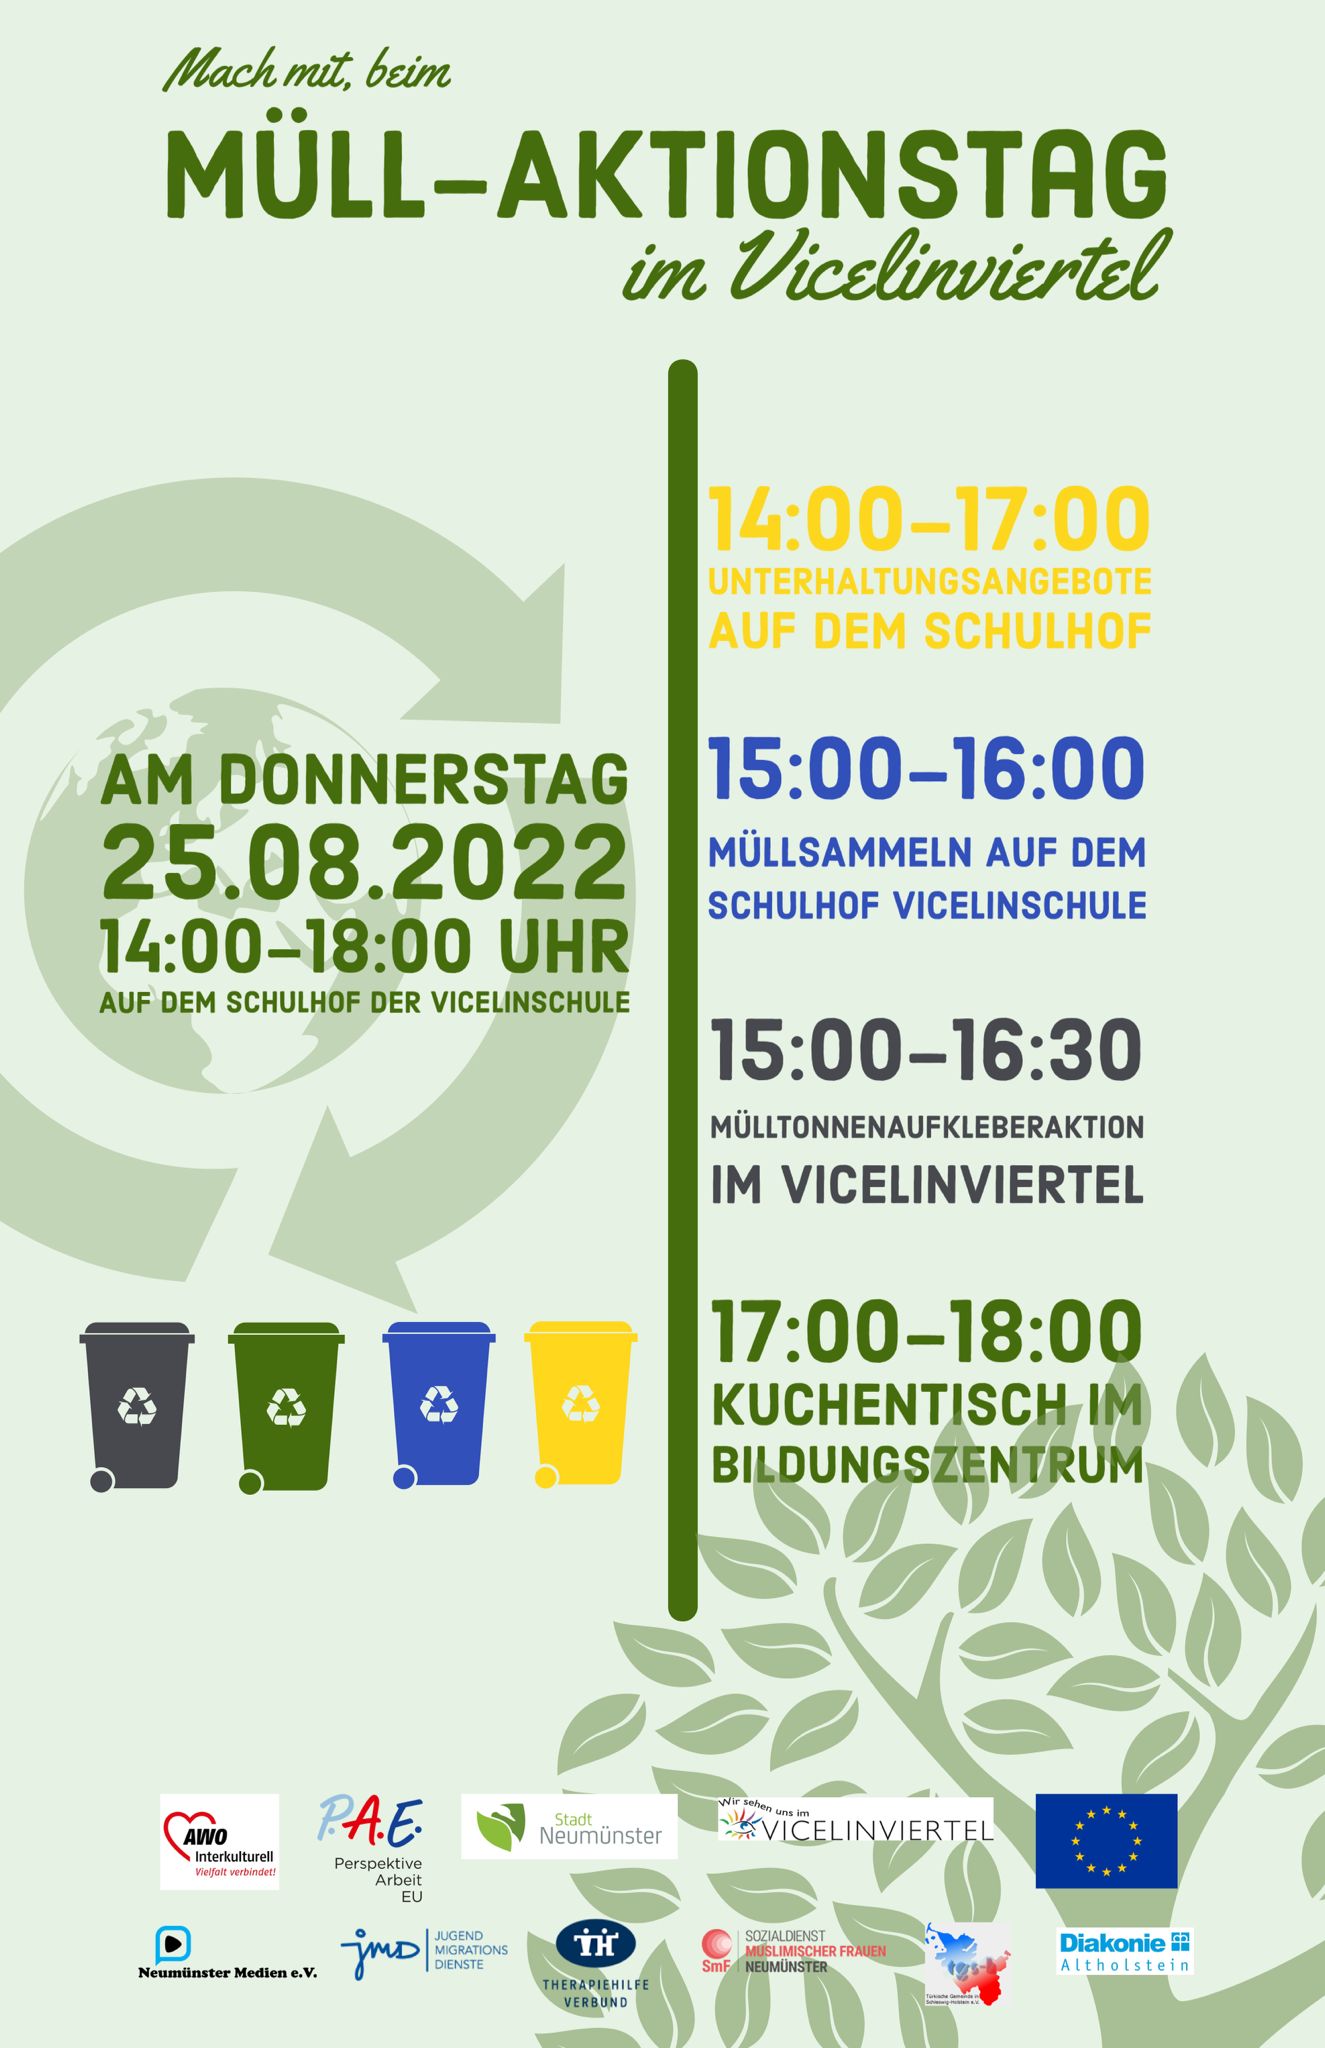 Müll-Aktionstag im Vicelinviertel – Wir sind dabei!